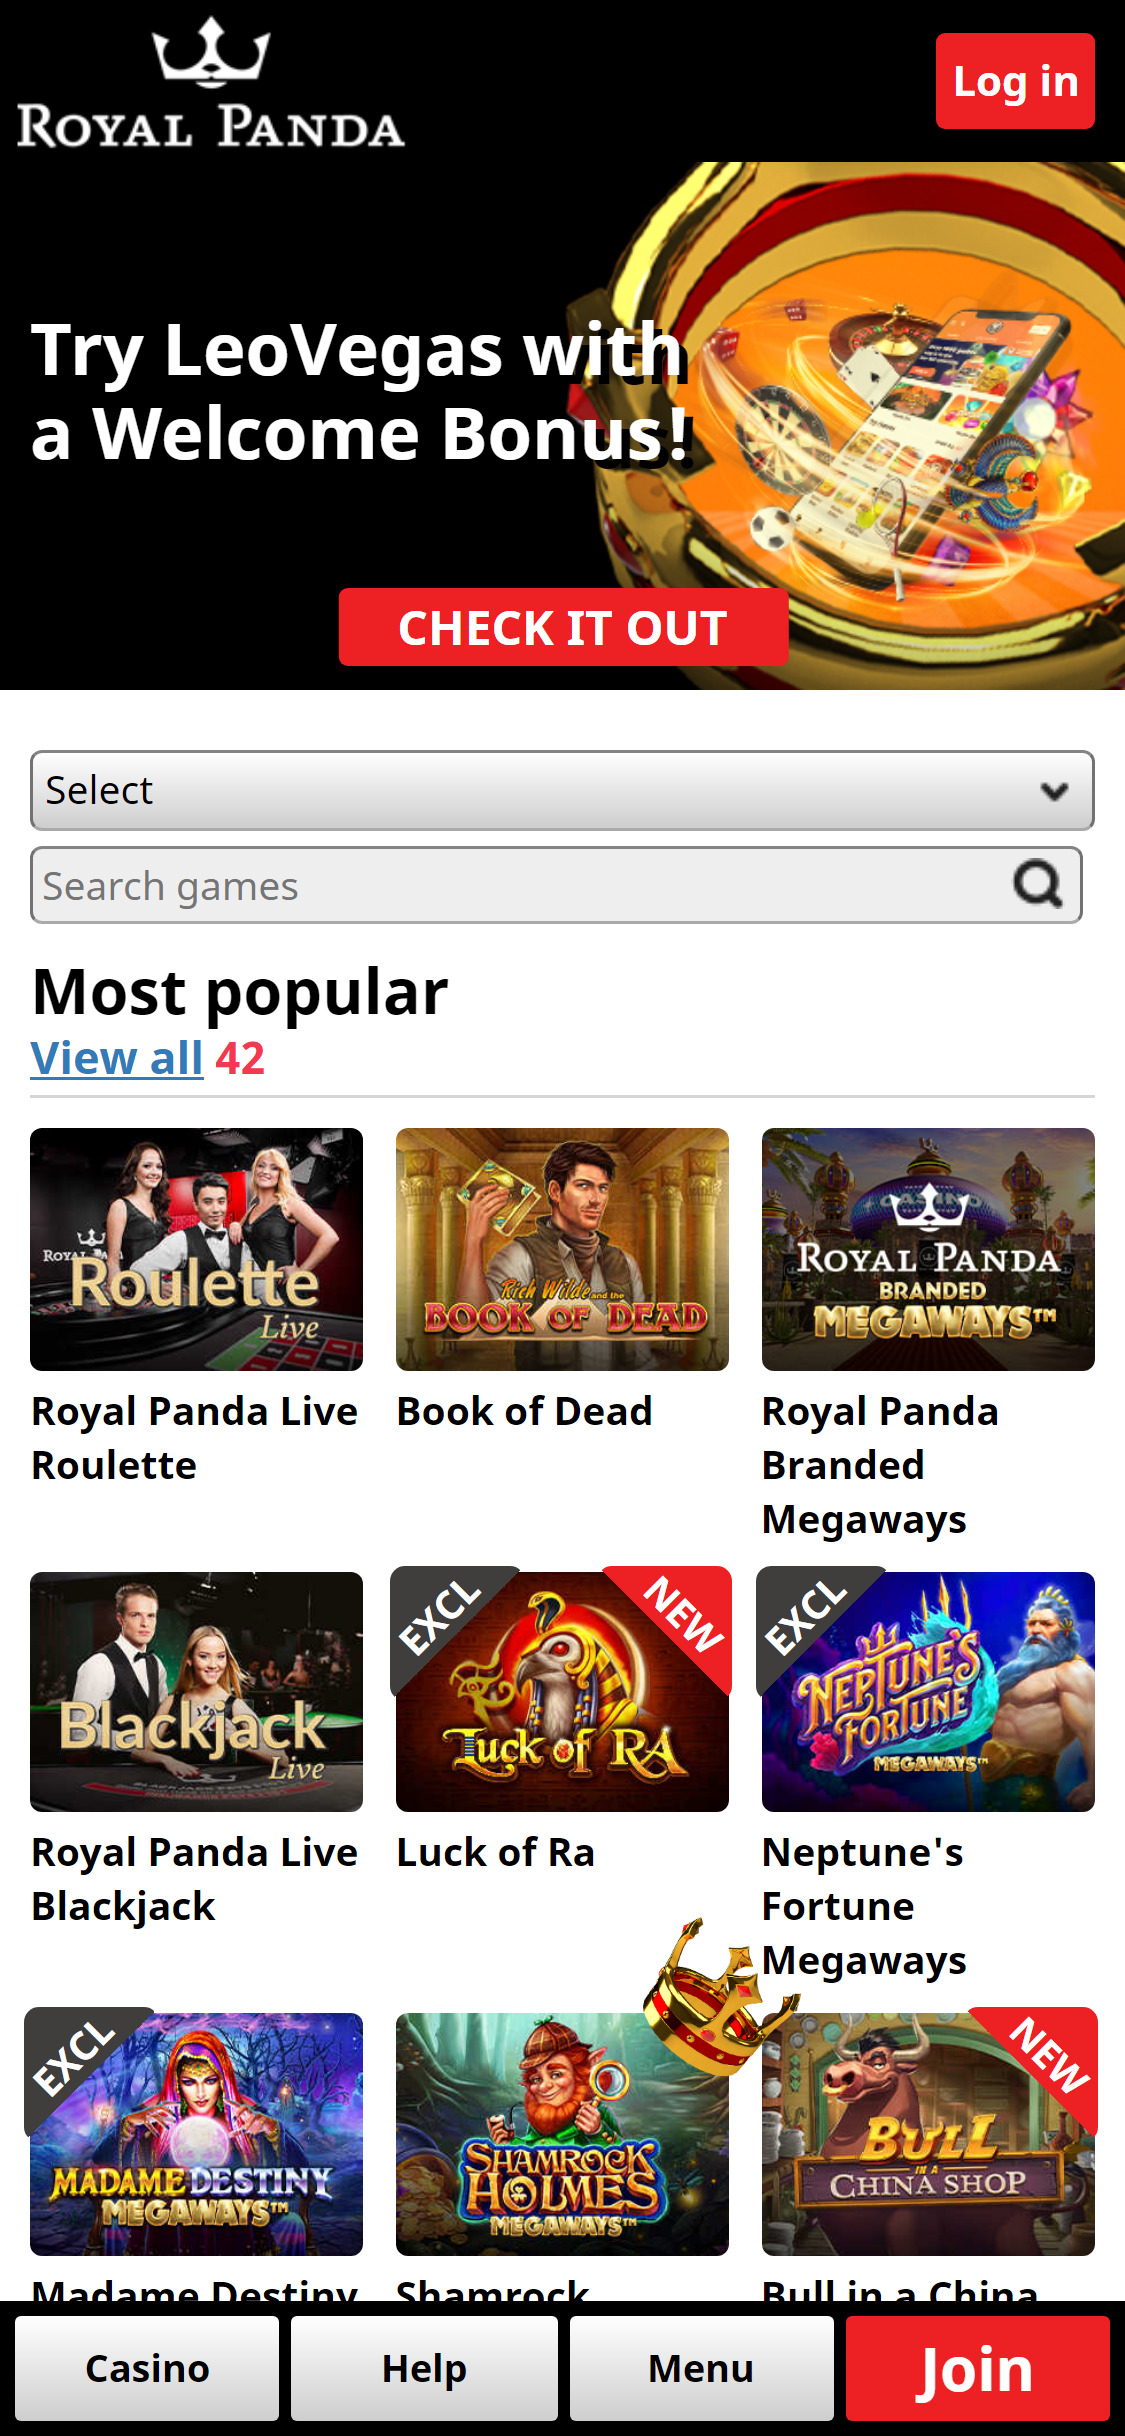 Royal Panda Casino Mobile Review